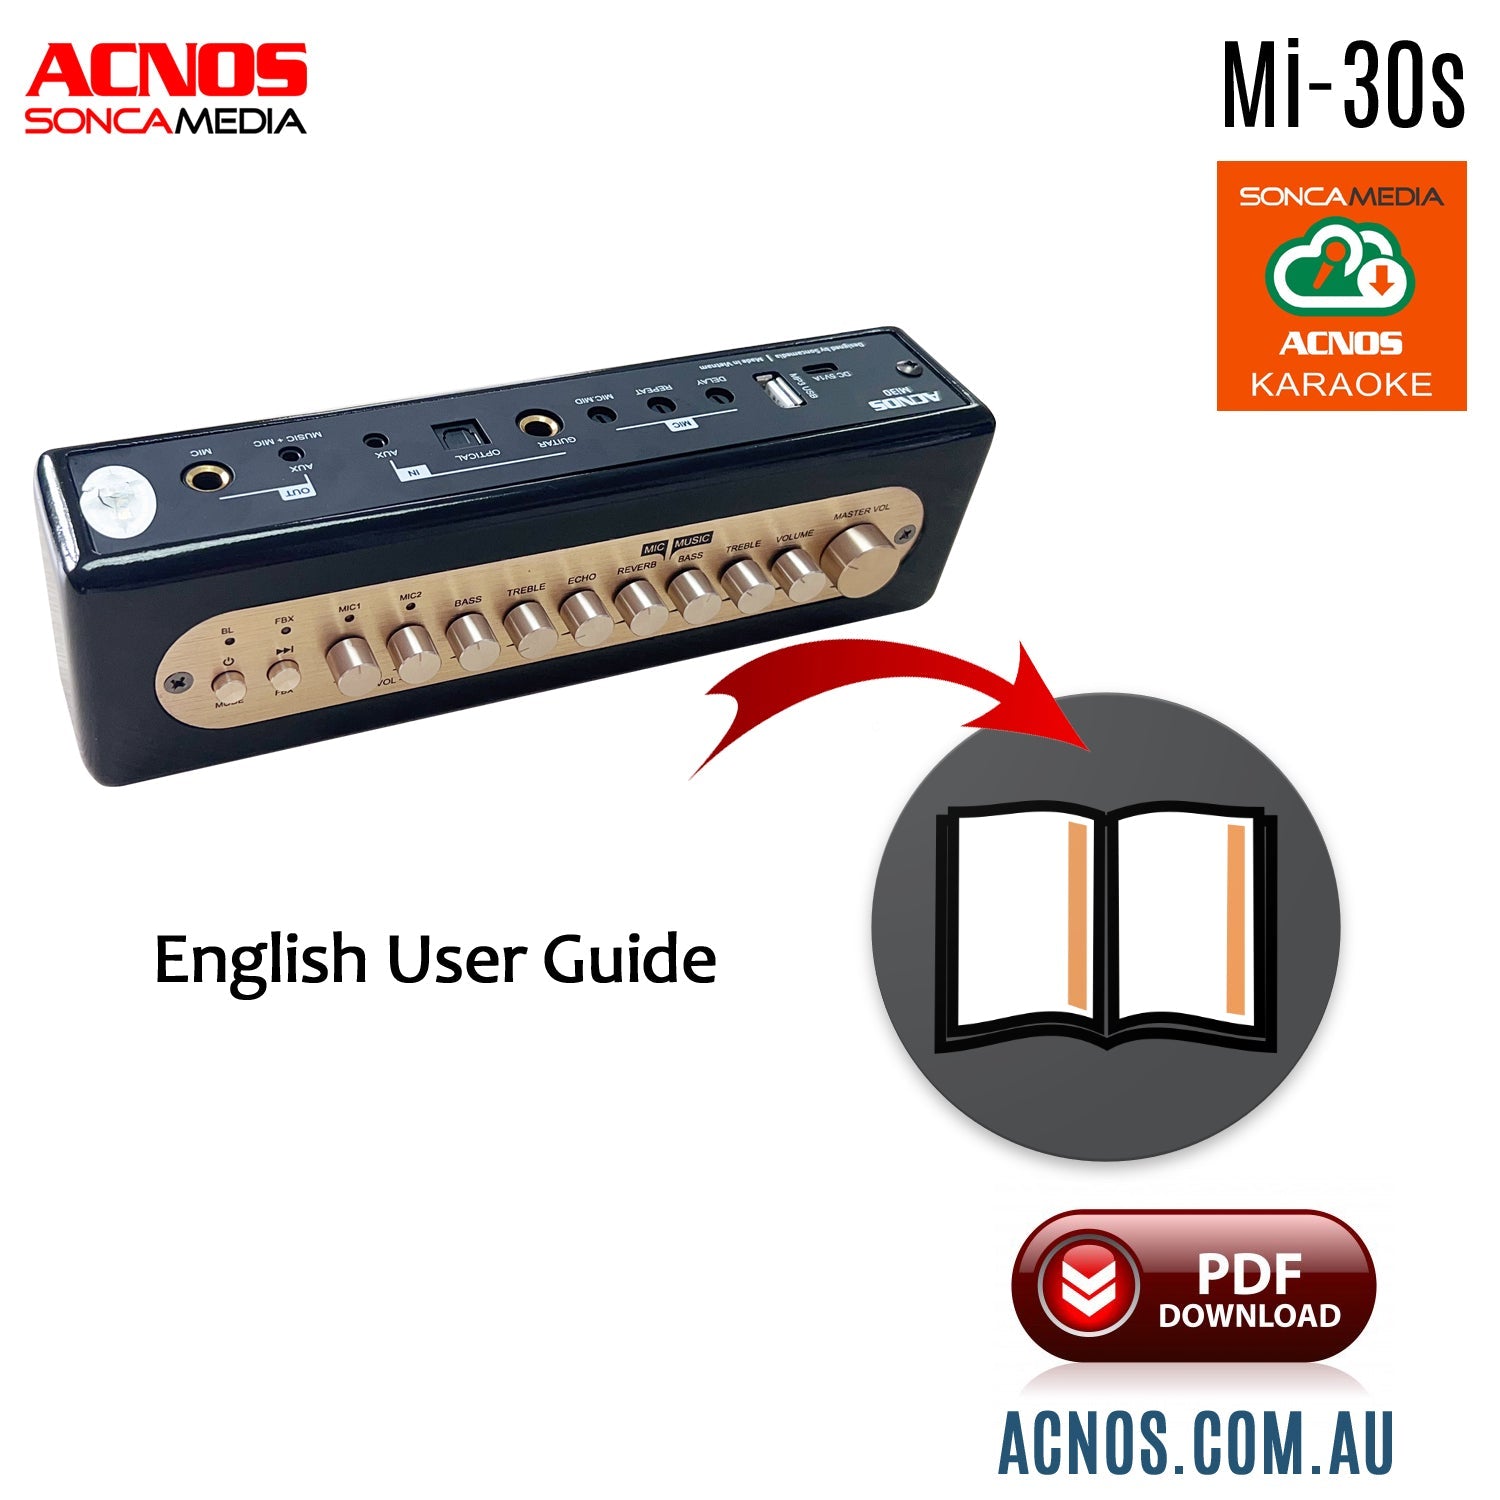 How To Connect Guide - ACNOS Mi-30s Compact Portable Karaoke Mixer - Karaoke Home Entertainment